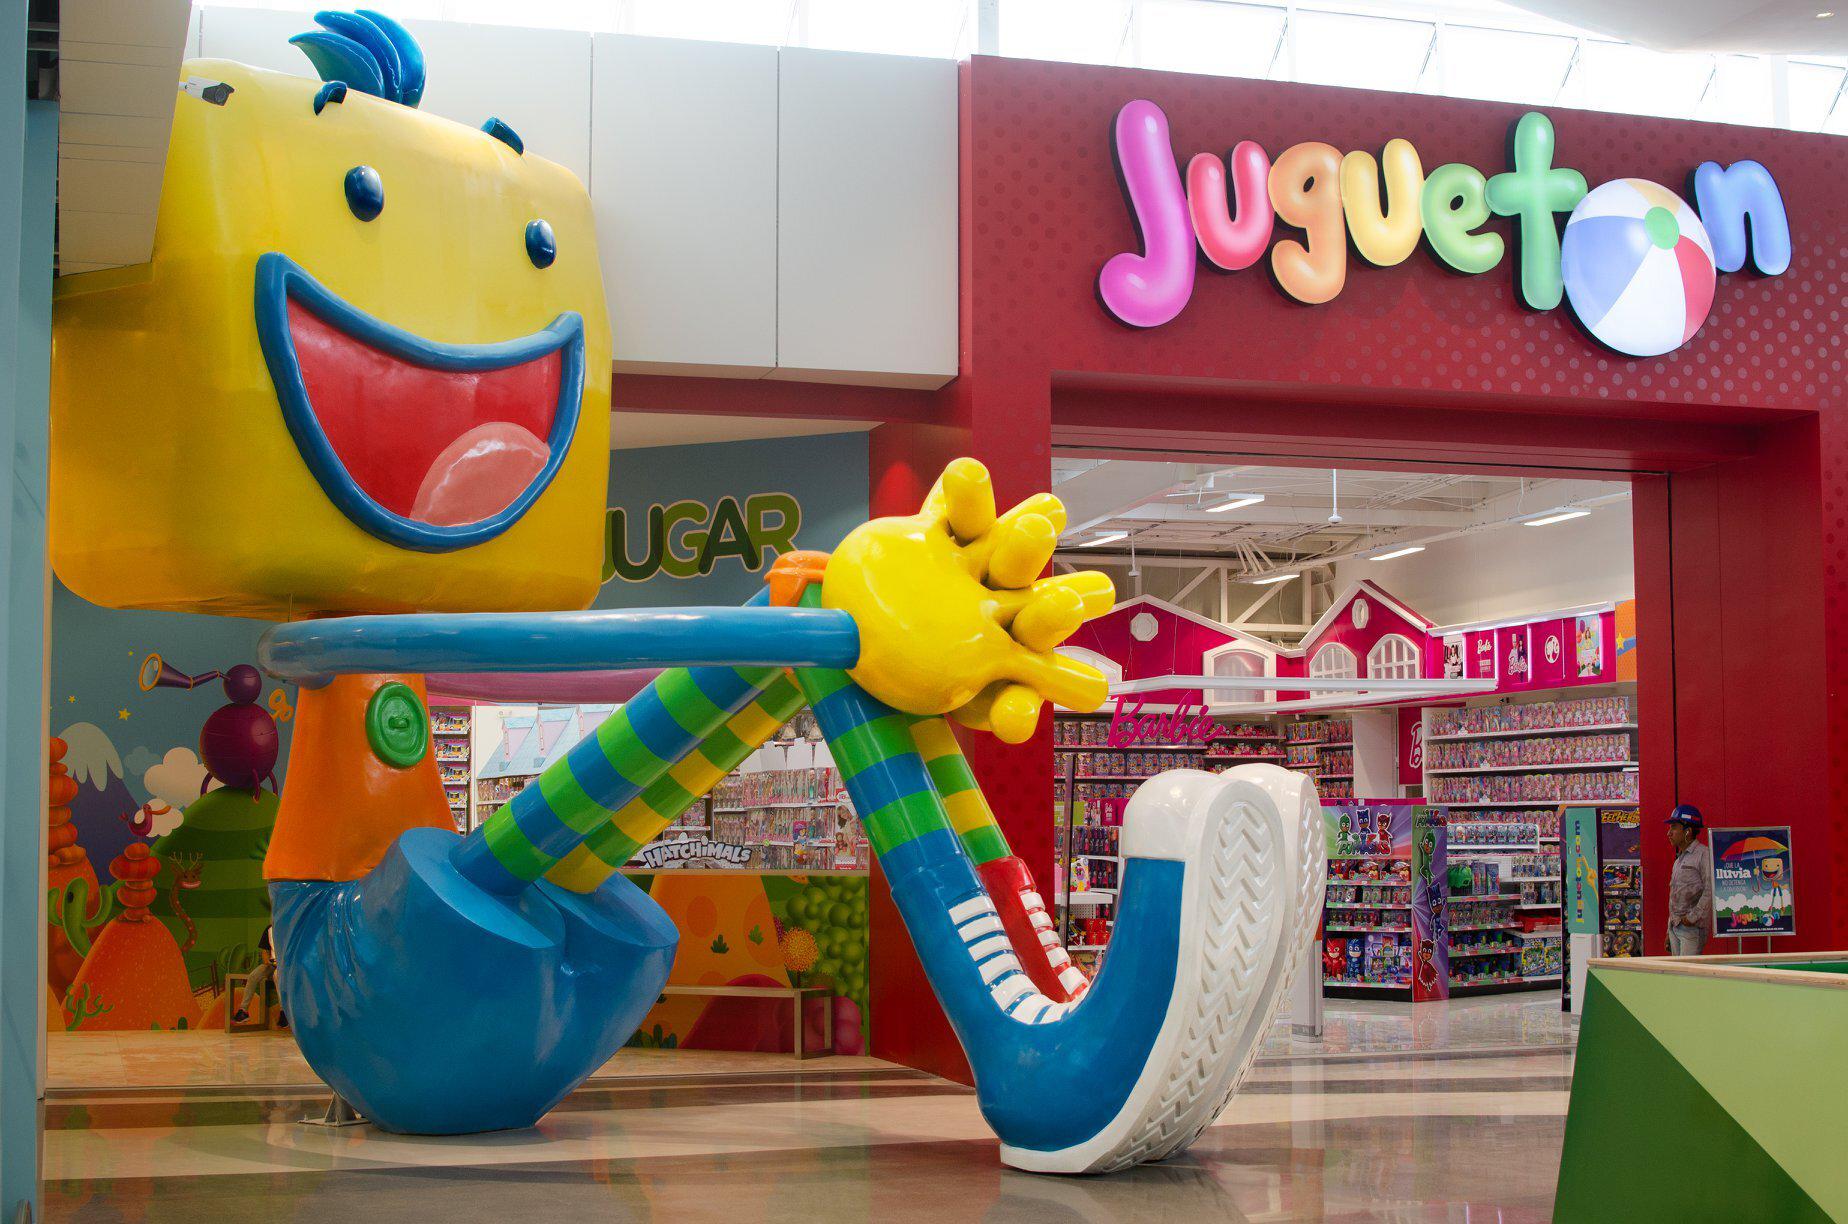 Guatemala inauguró la juguetería más grande de Centroamérica